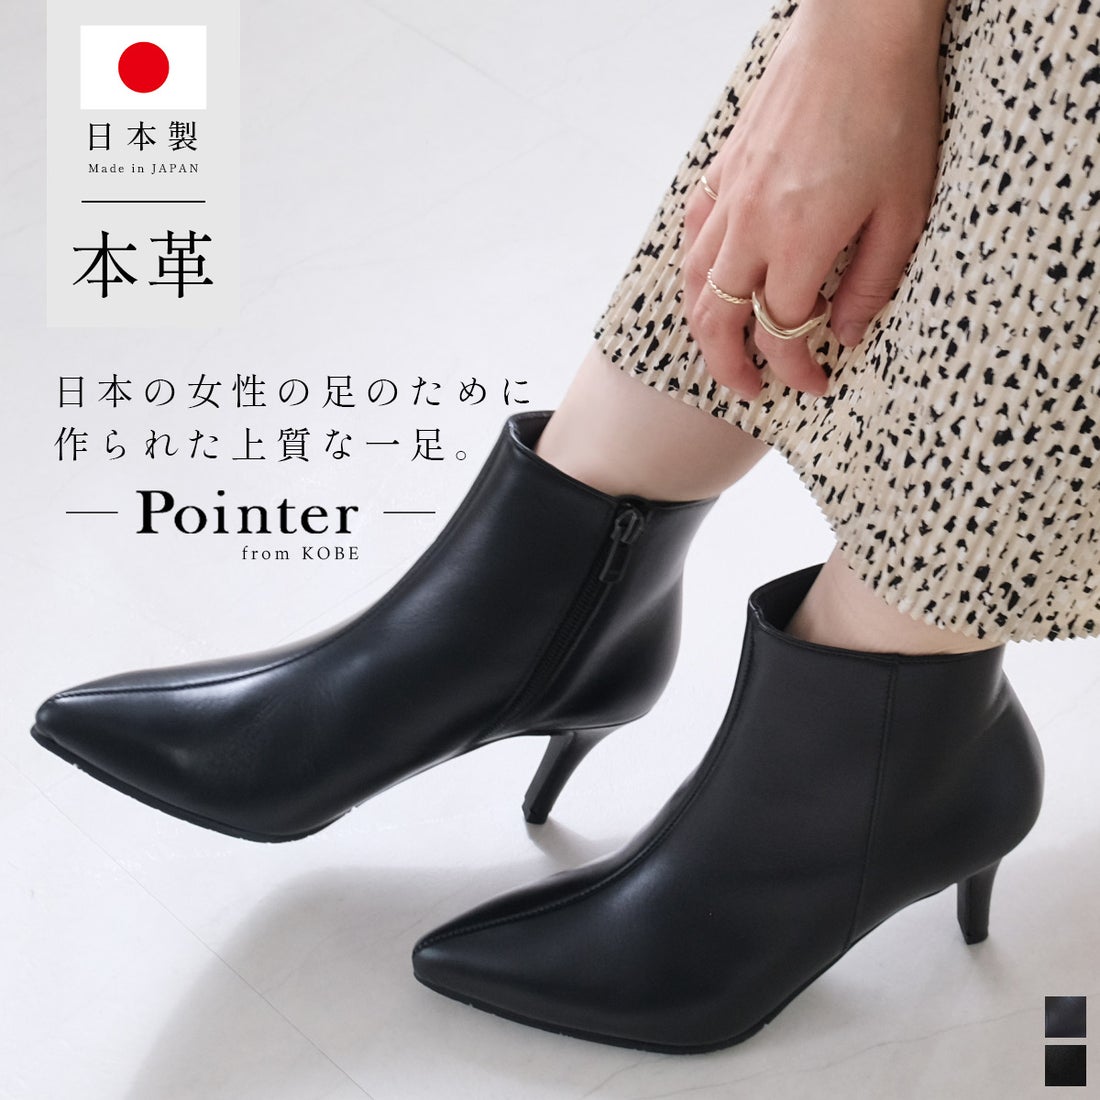 pointer 【本革】ブーツ ポインテッドトゥ 日本製 レディース 7cm